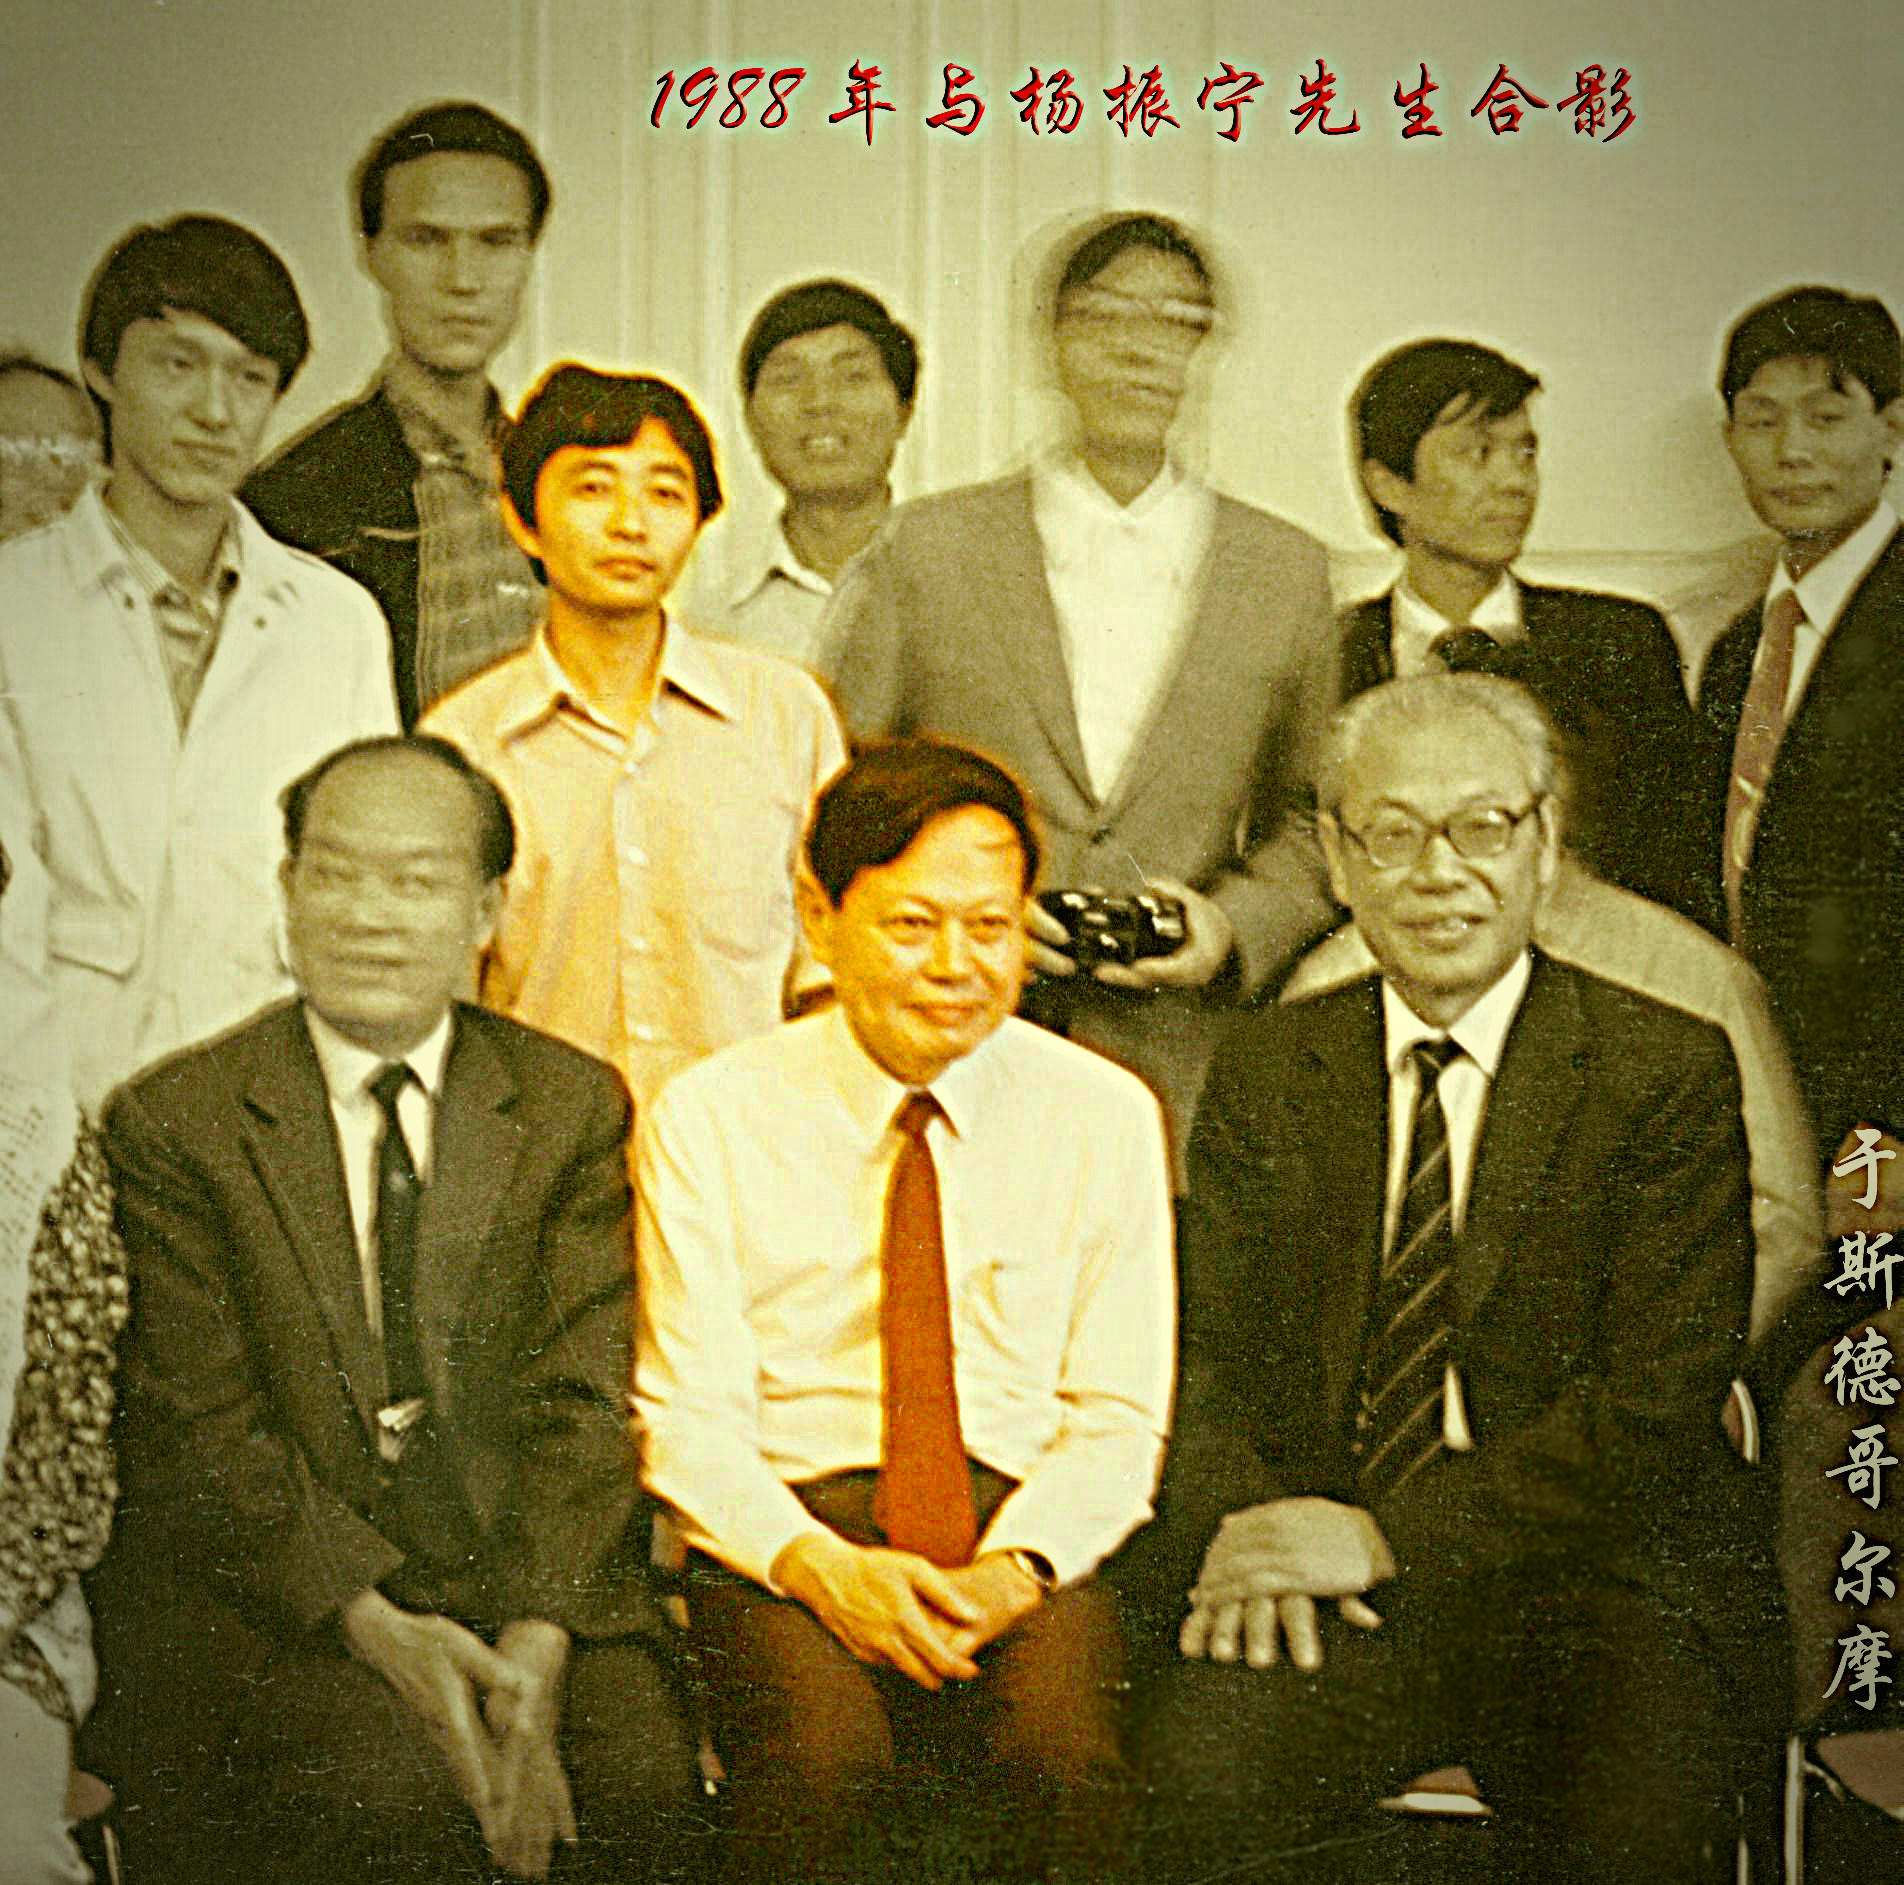 1988年与杨振宁先生的集体照片